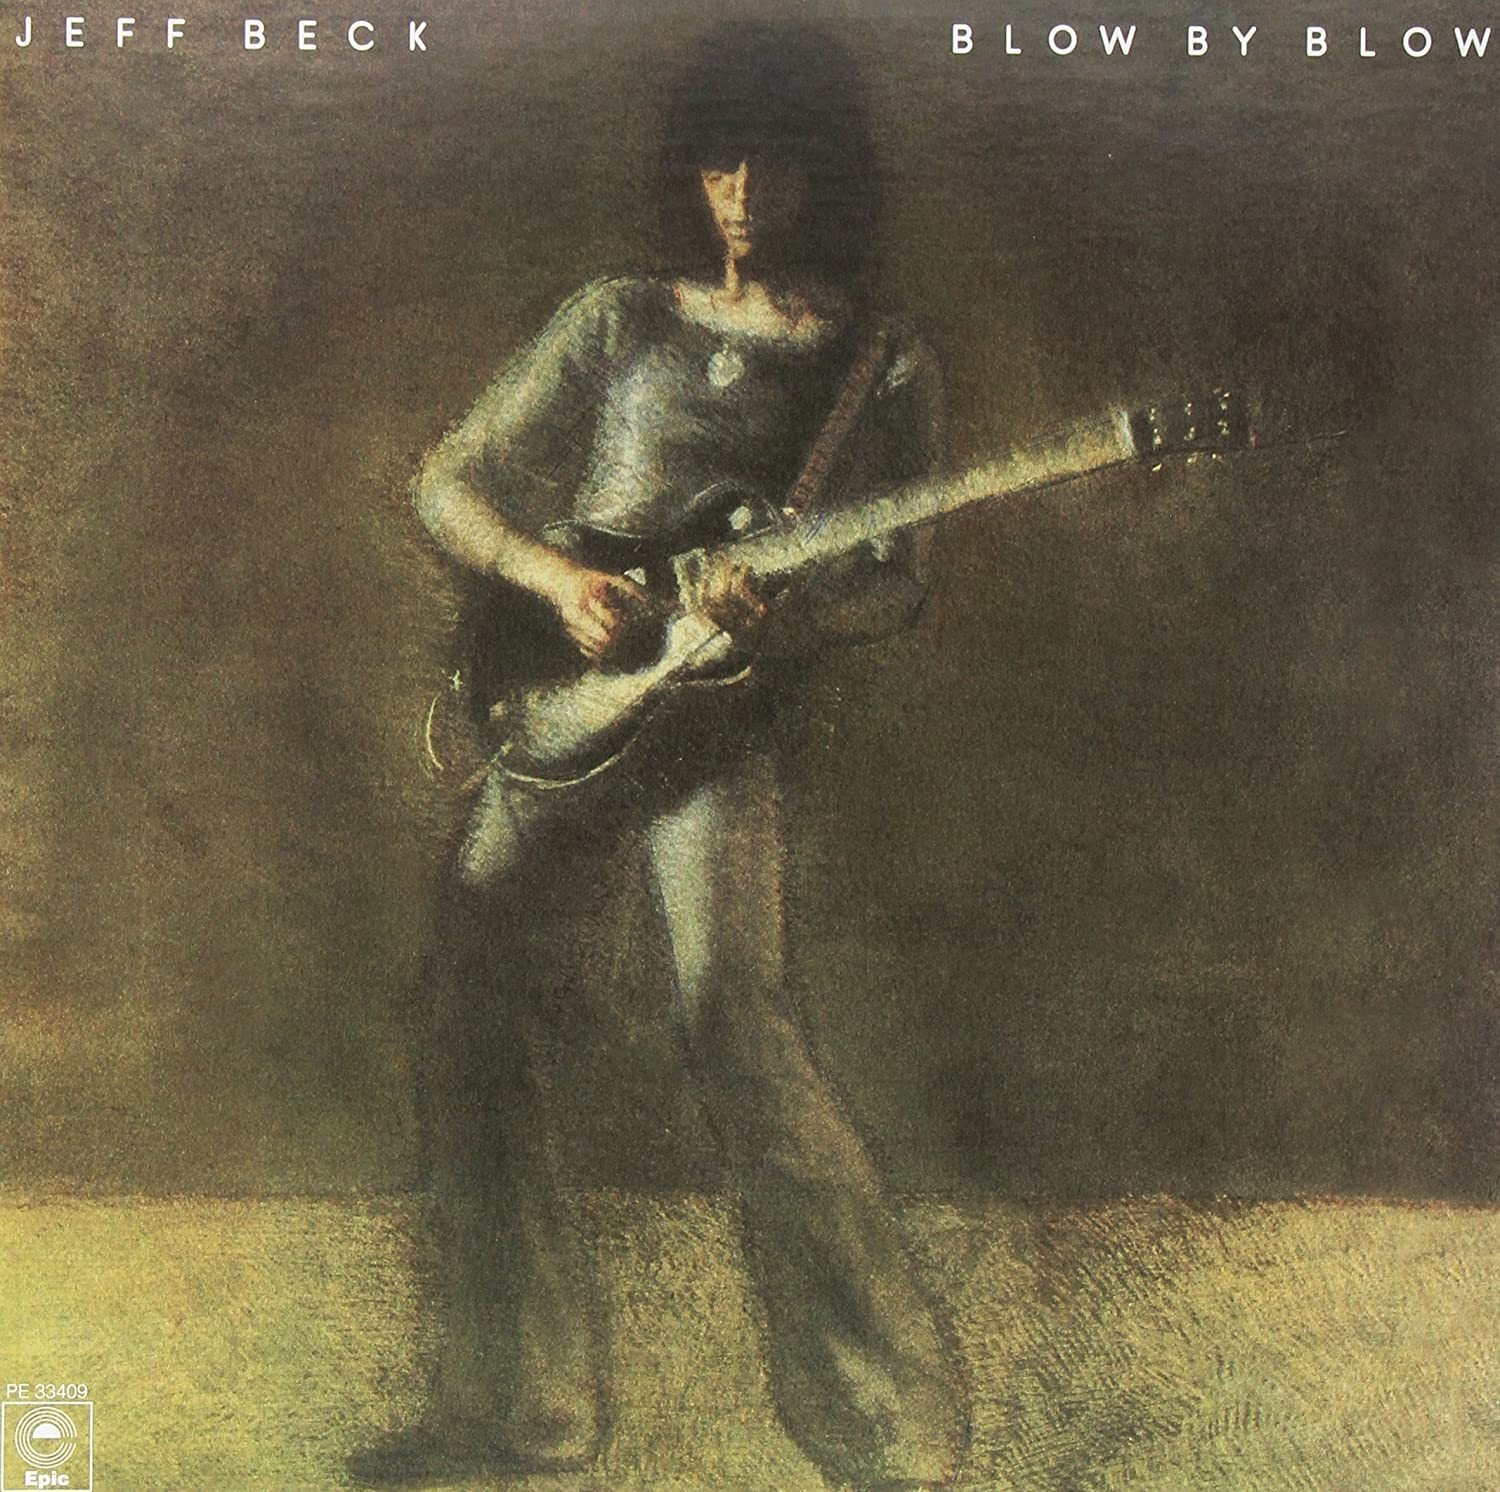 Disque vinyle Jeff Beck - Blow By Blow (2 LP)